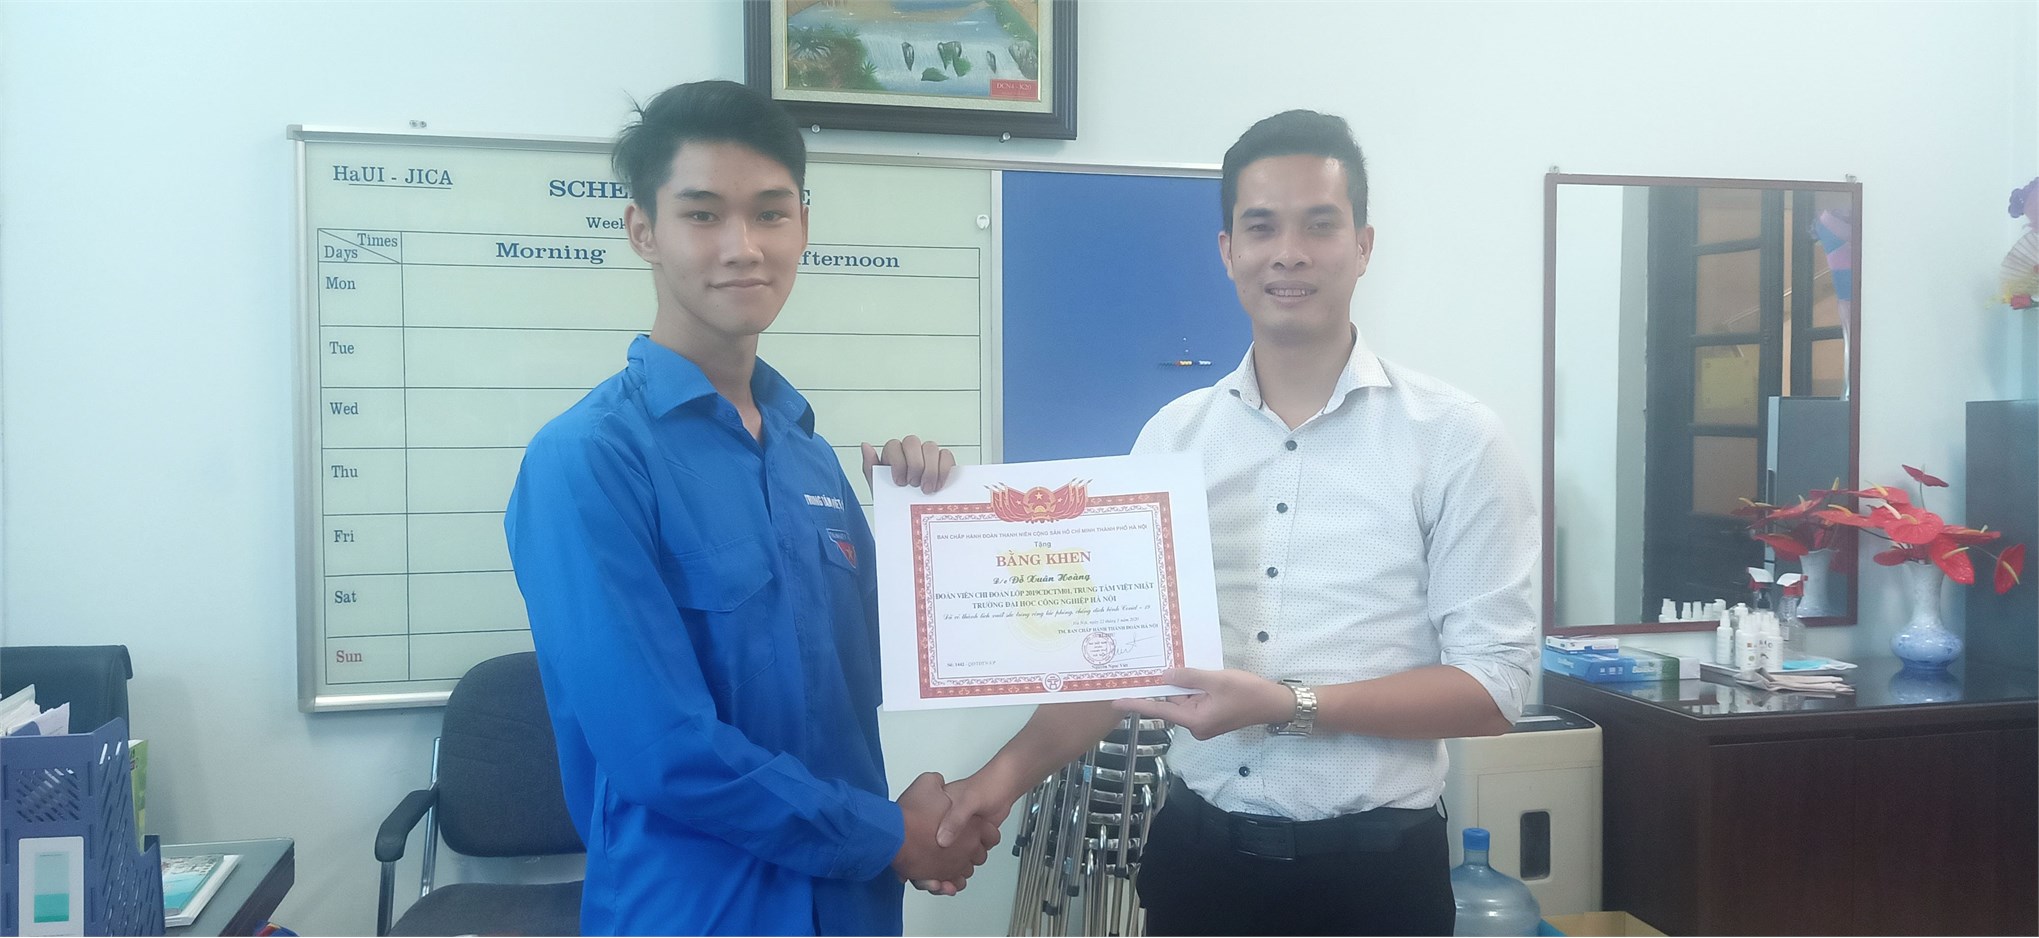 Sinh viên Đỗ Xuân Hoàng được nhận bằng khen của Thành đoàn Hà Nội về thành tích xuất sắc trong phong trào chống dịch Covid – 19